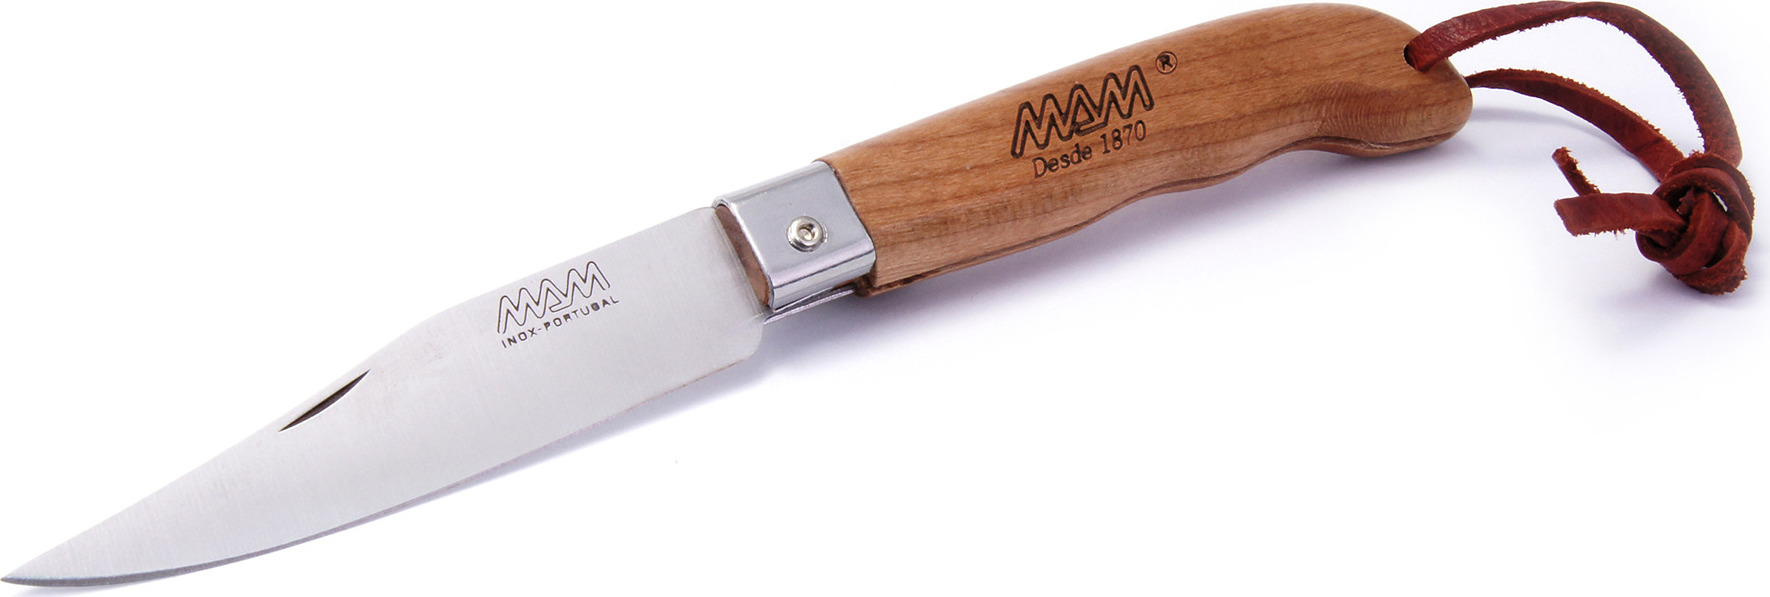 Zavírací nůž s koženým poutkem MAM Sportive 2047 - buk, 8,3 cm